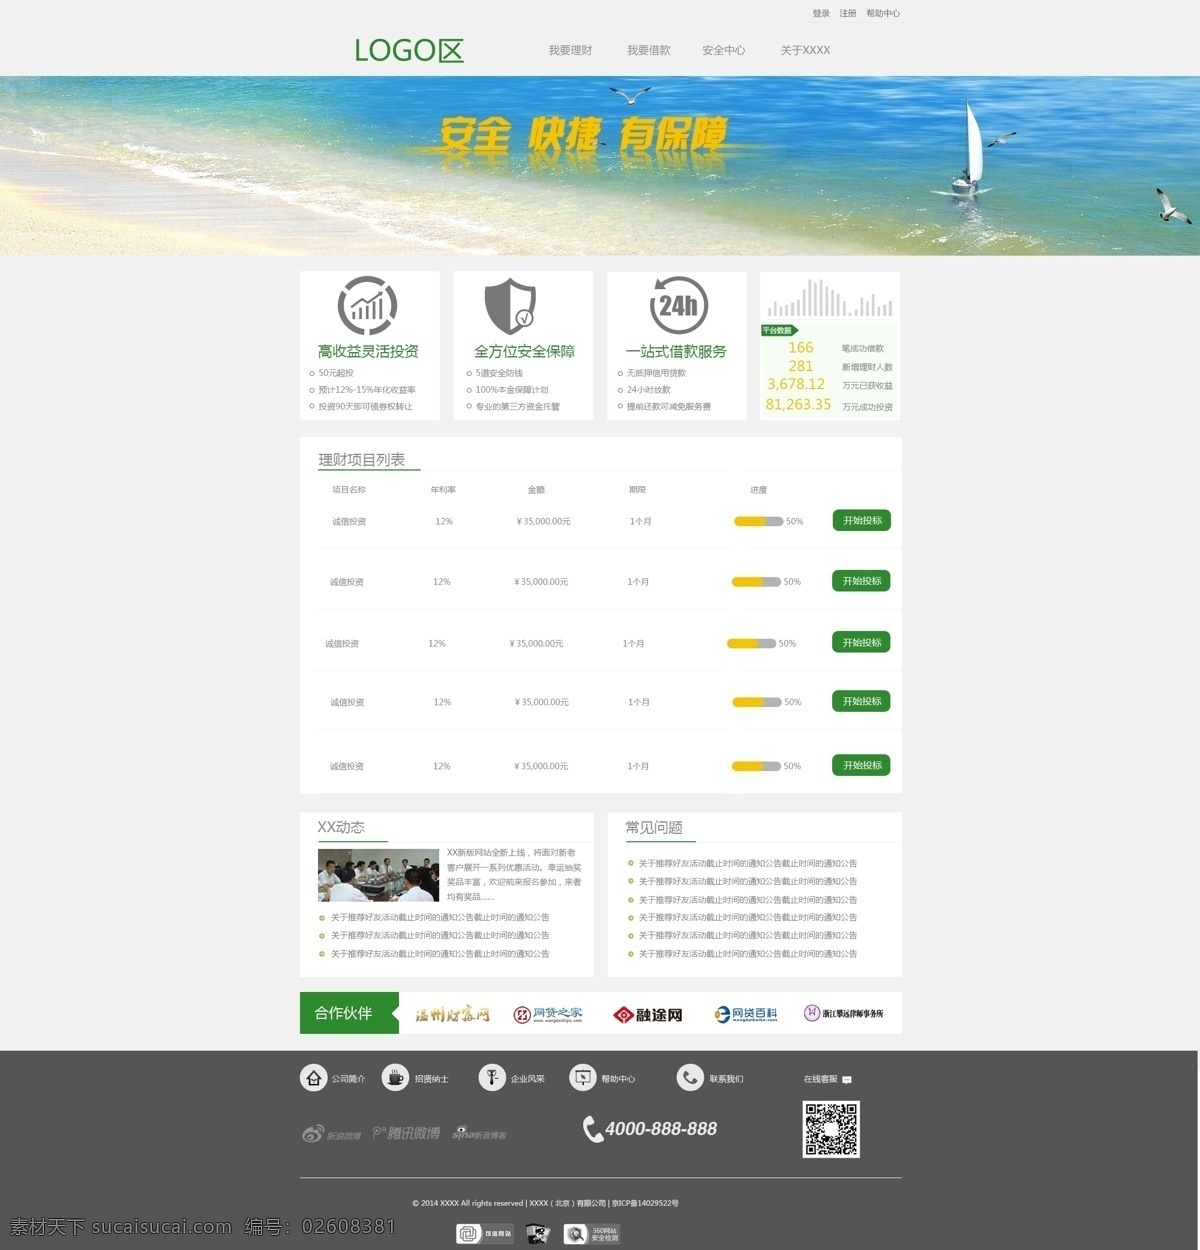 绿色 投资 网站 绿色网站 投资网站 网贷网站 简洁大气风格 原创设计 原创网页设计